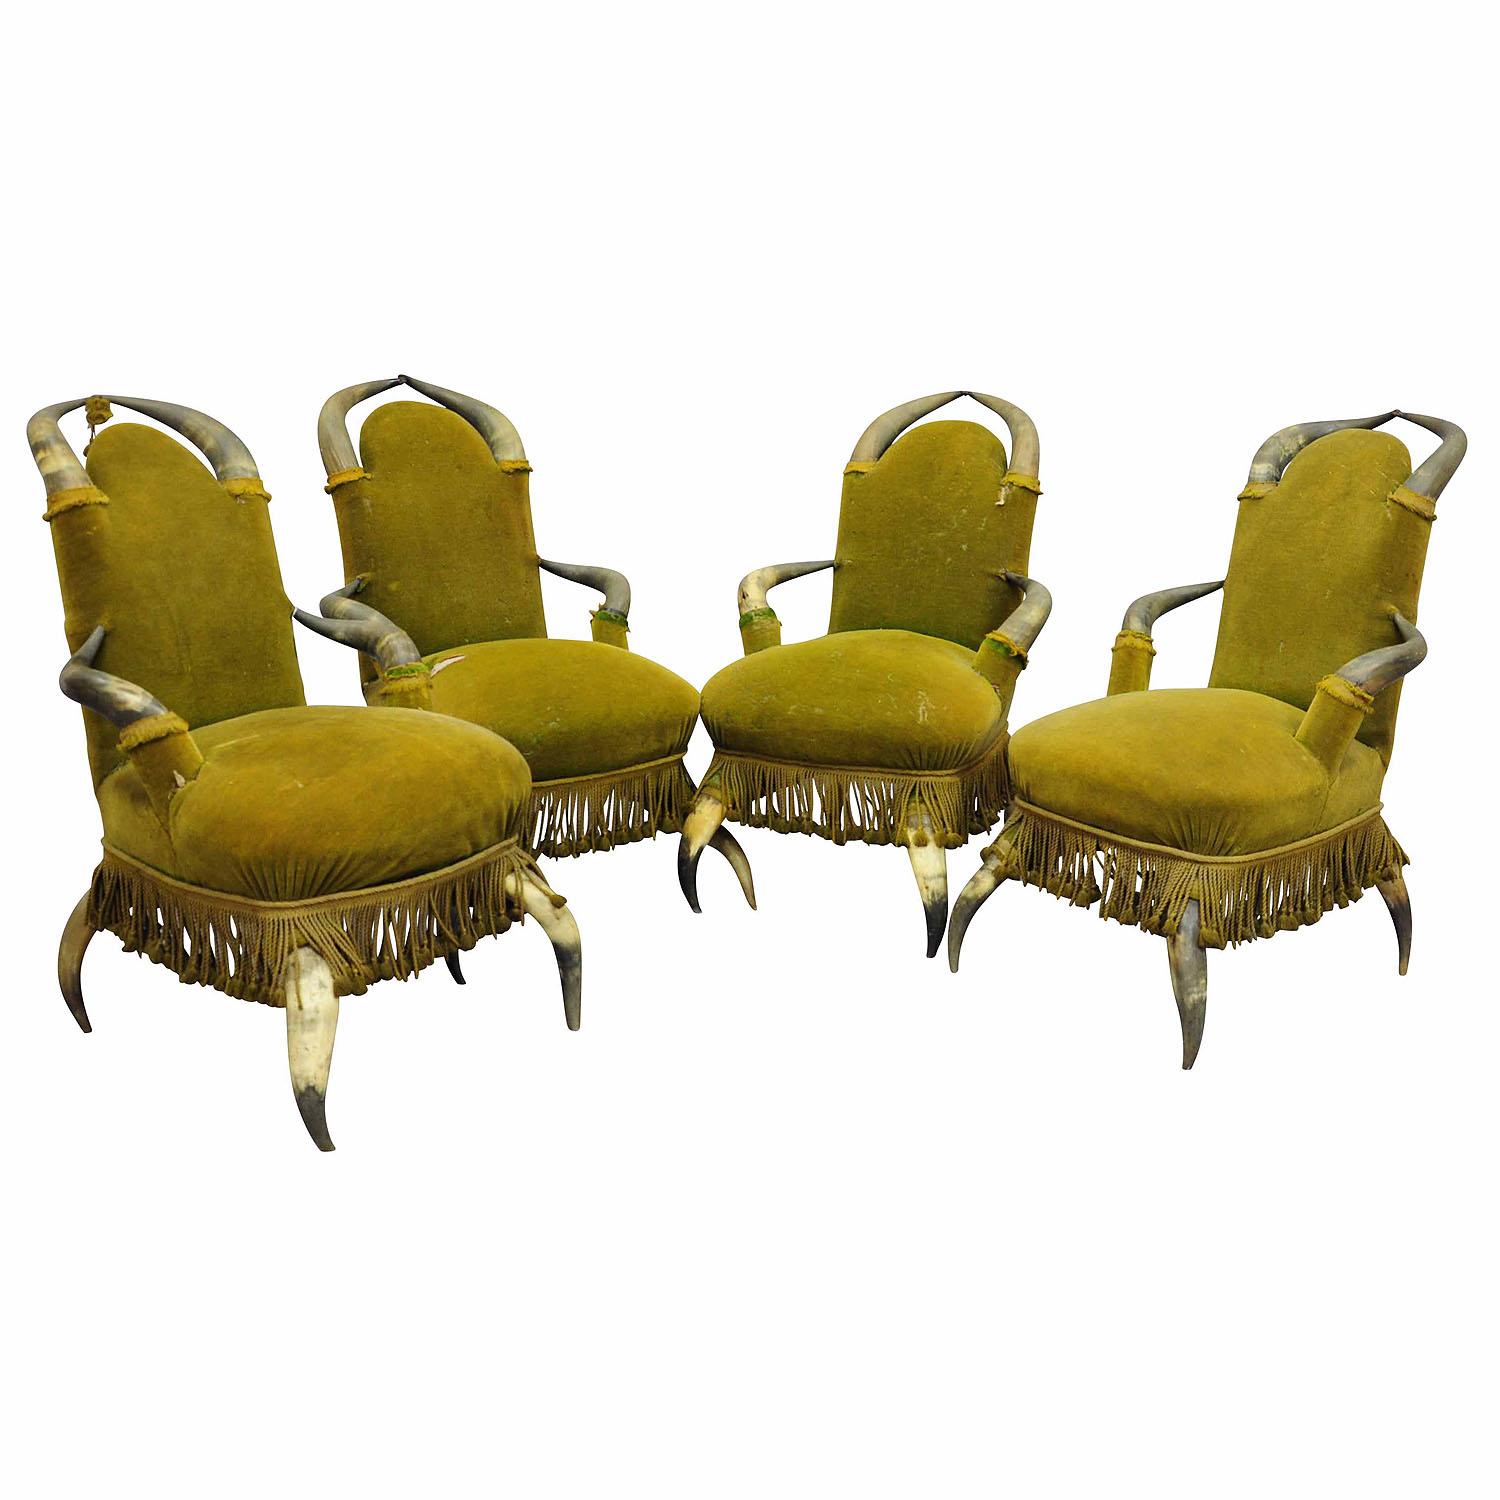 Vier antike Bull Horn Stühle ca. 1870

Ein Satz von vier antiken Stierhornstühlen um 1870, bezogen mit antikem grünem Samt, der erneuert werden muss (die Haare verlieren sich). Hergestellt in Österreich um 1870.

Geweihmöbel gehörten zu den